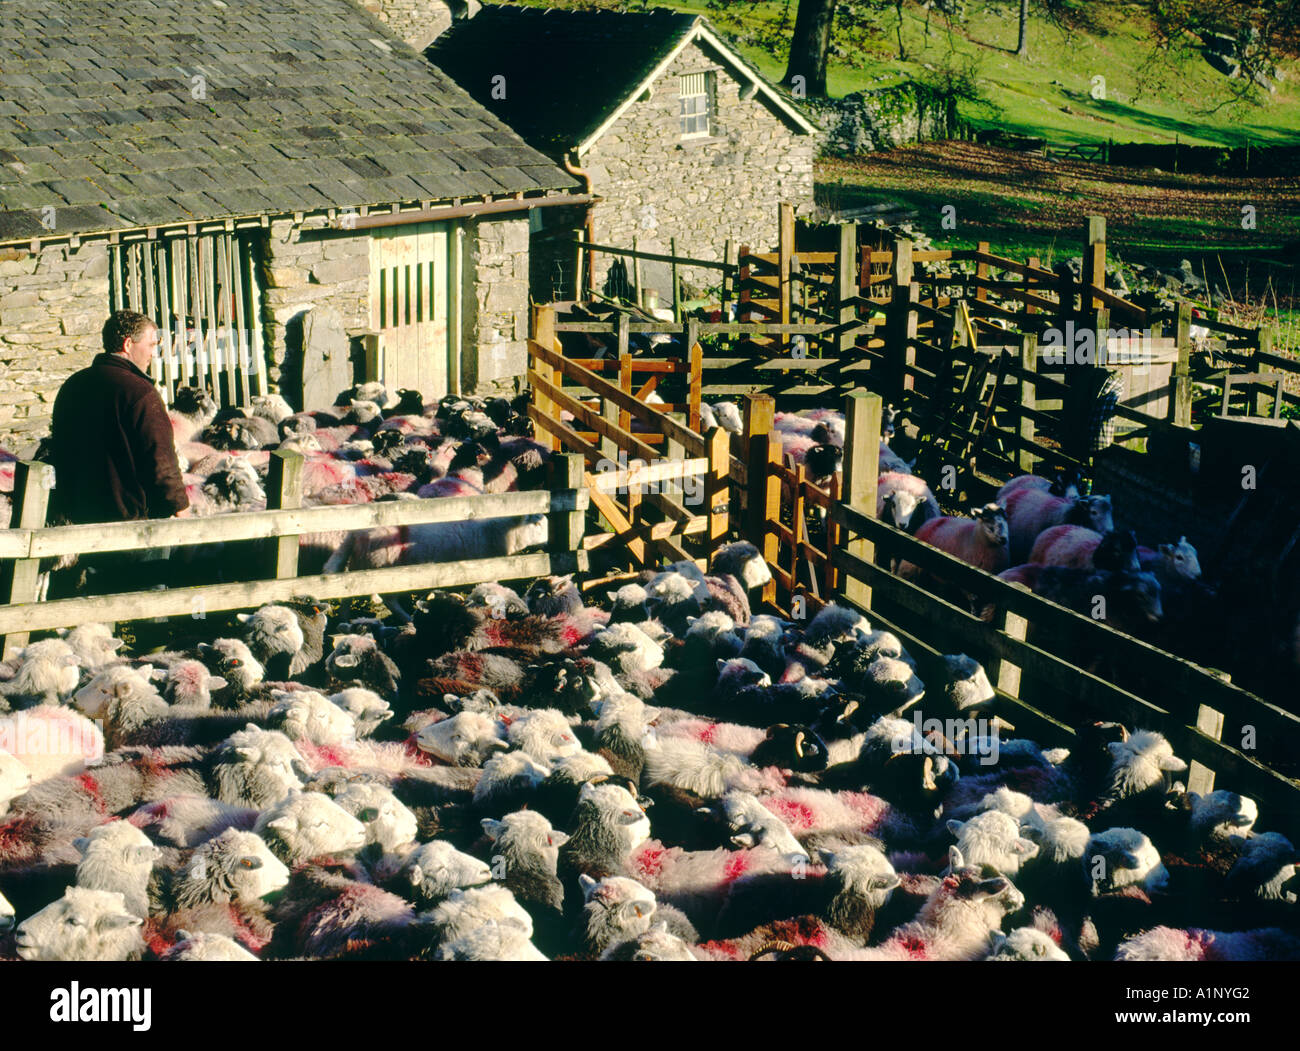 Landwirt penning Schafe. Bergbauernhof in der Nähe von Ambleside und Grasmere im Langdale Tal. Nationalpark Lake District, Cumbria, England. Stockfoto